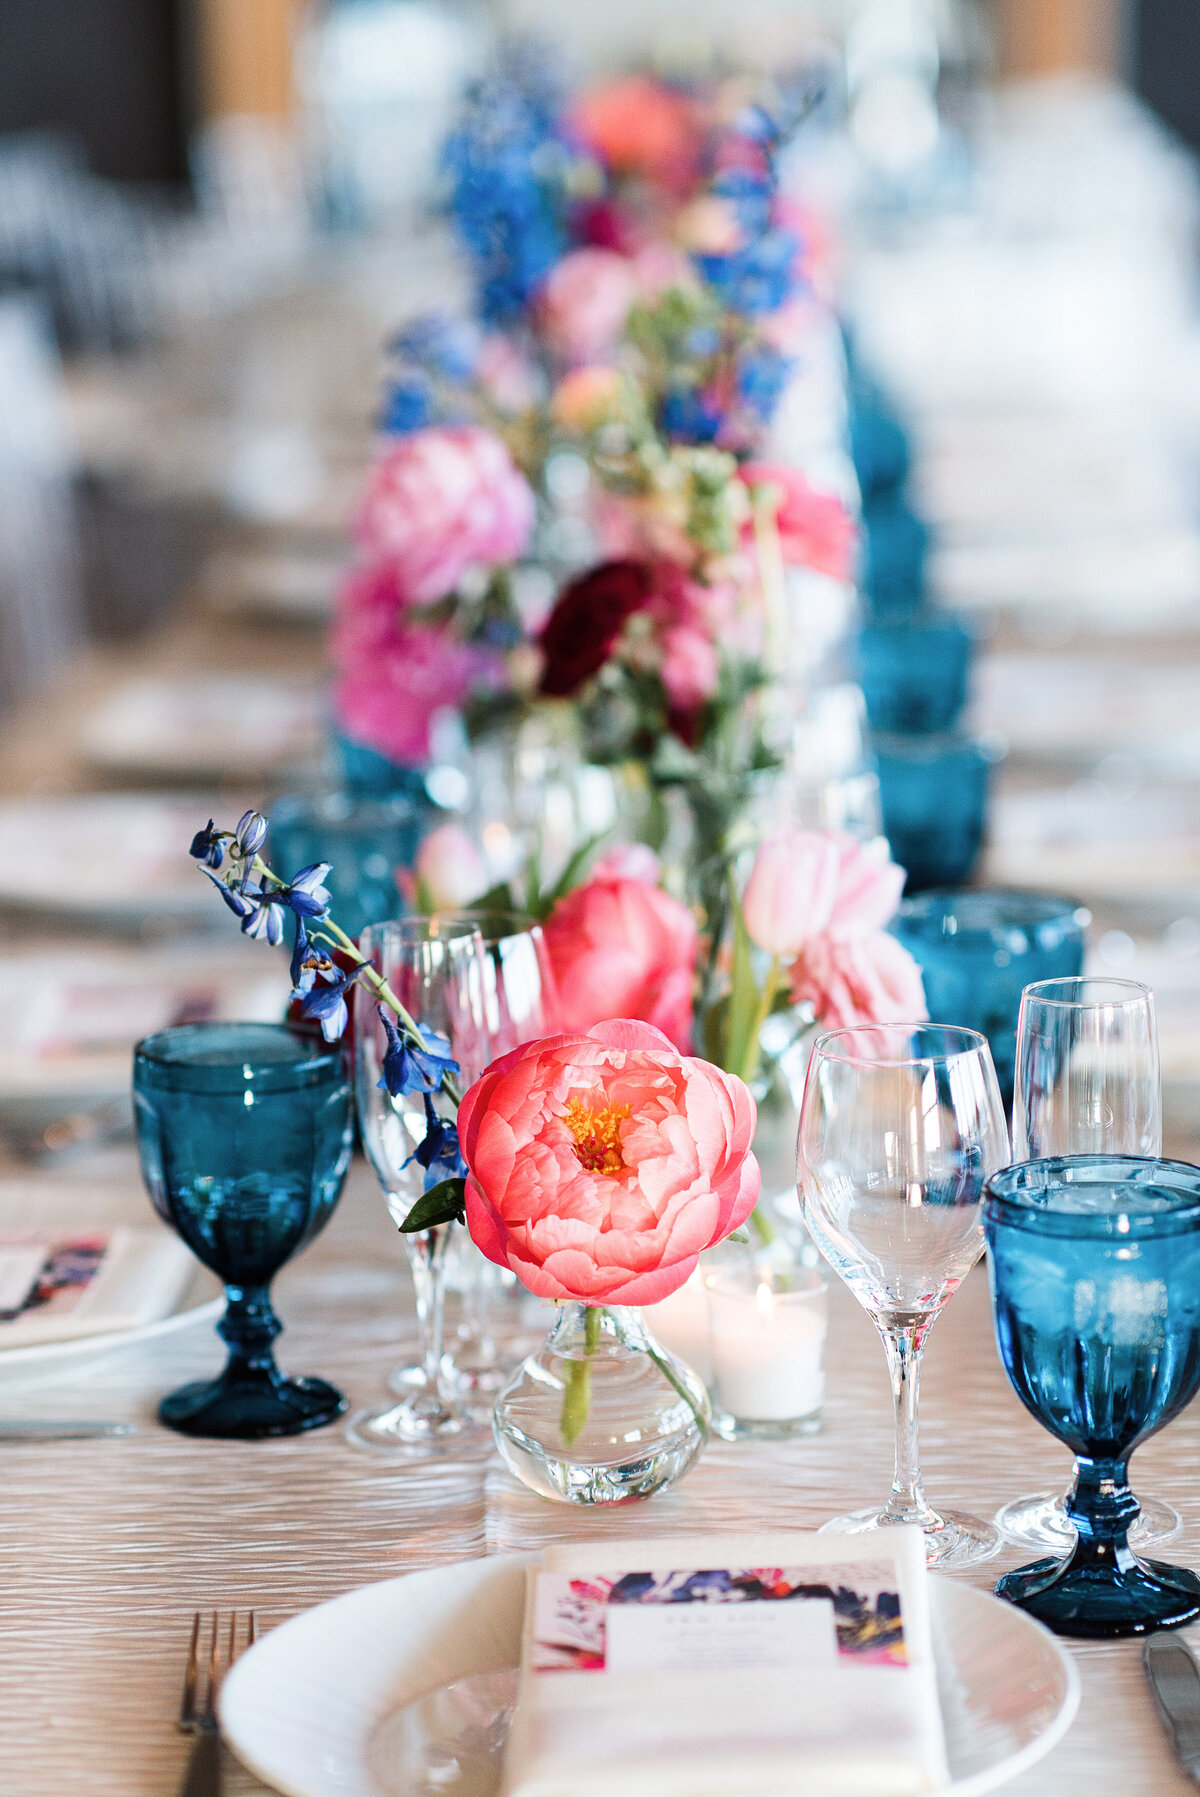 Elegant table setting at lake tahoe wedding